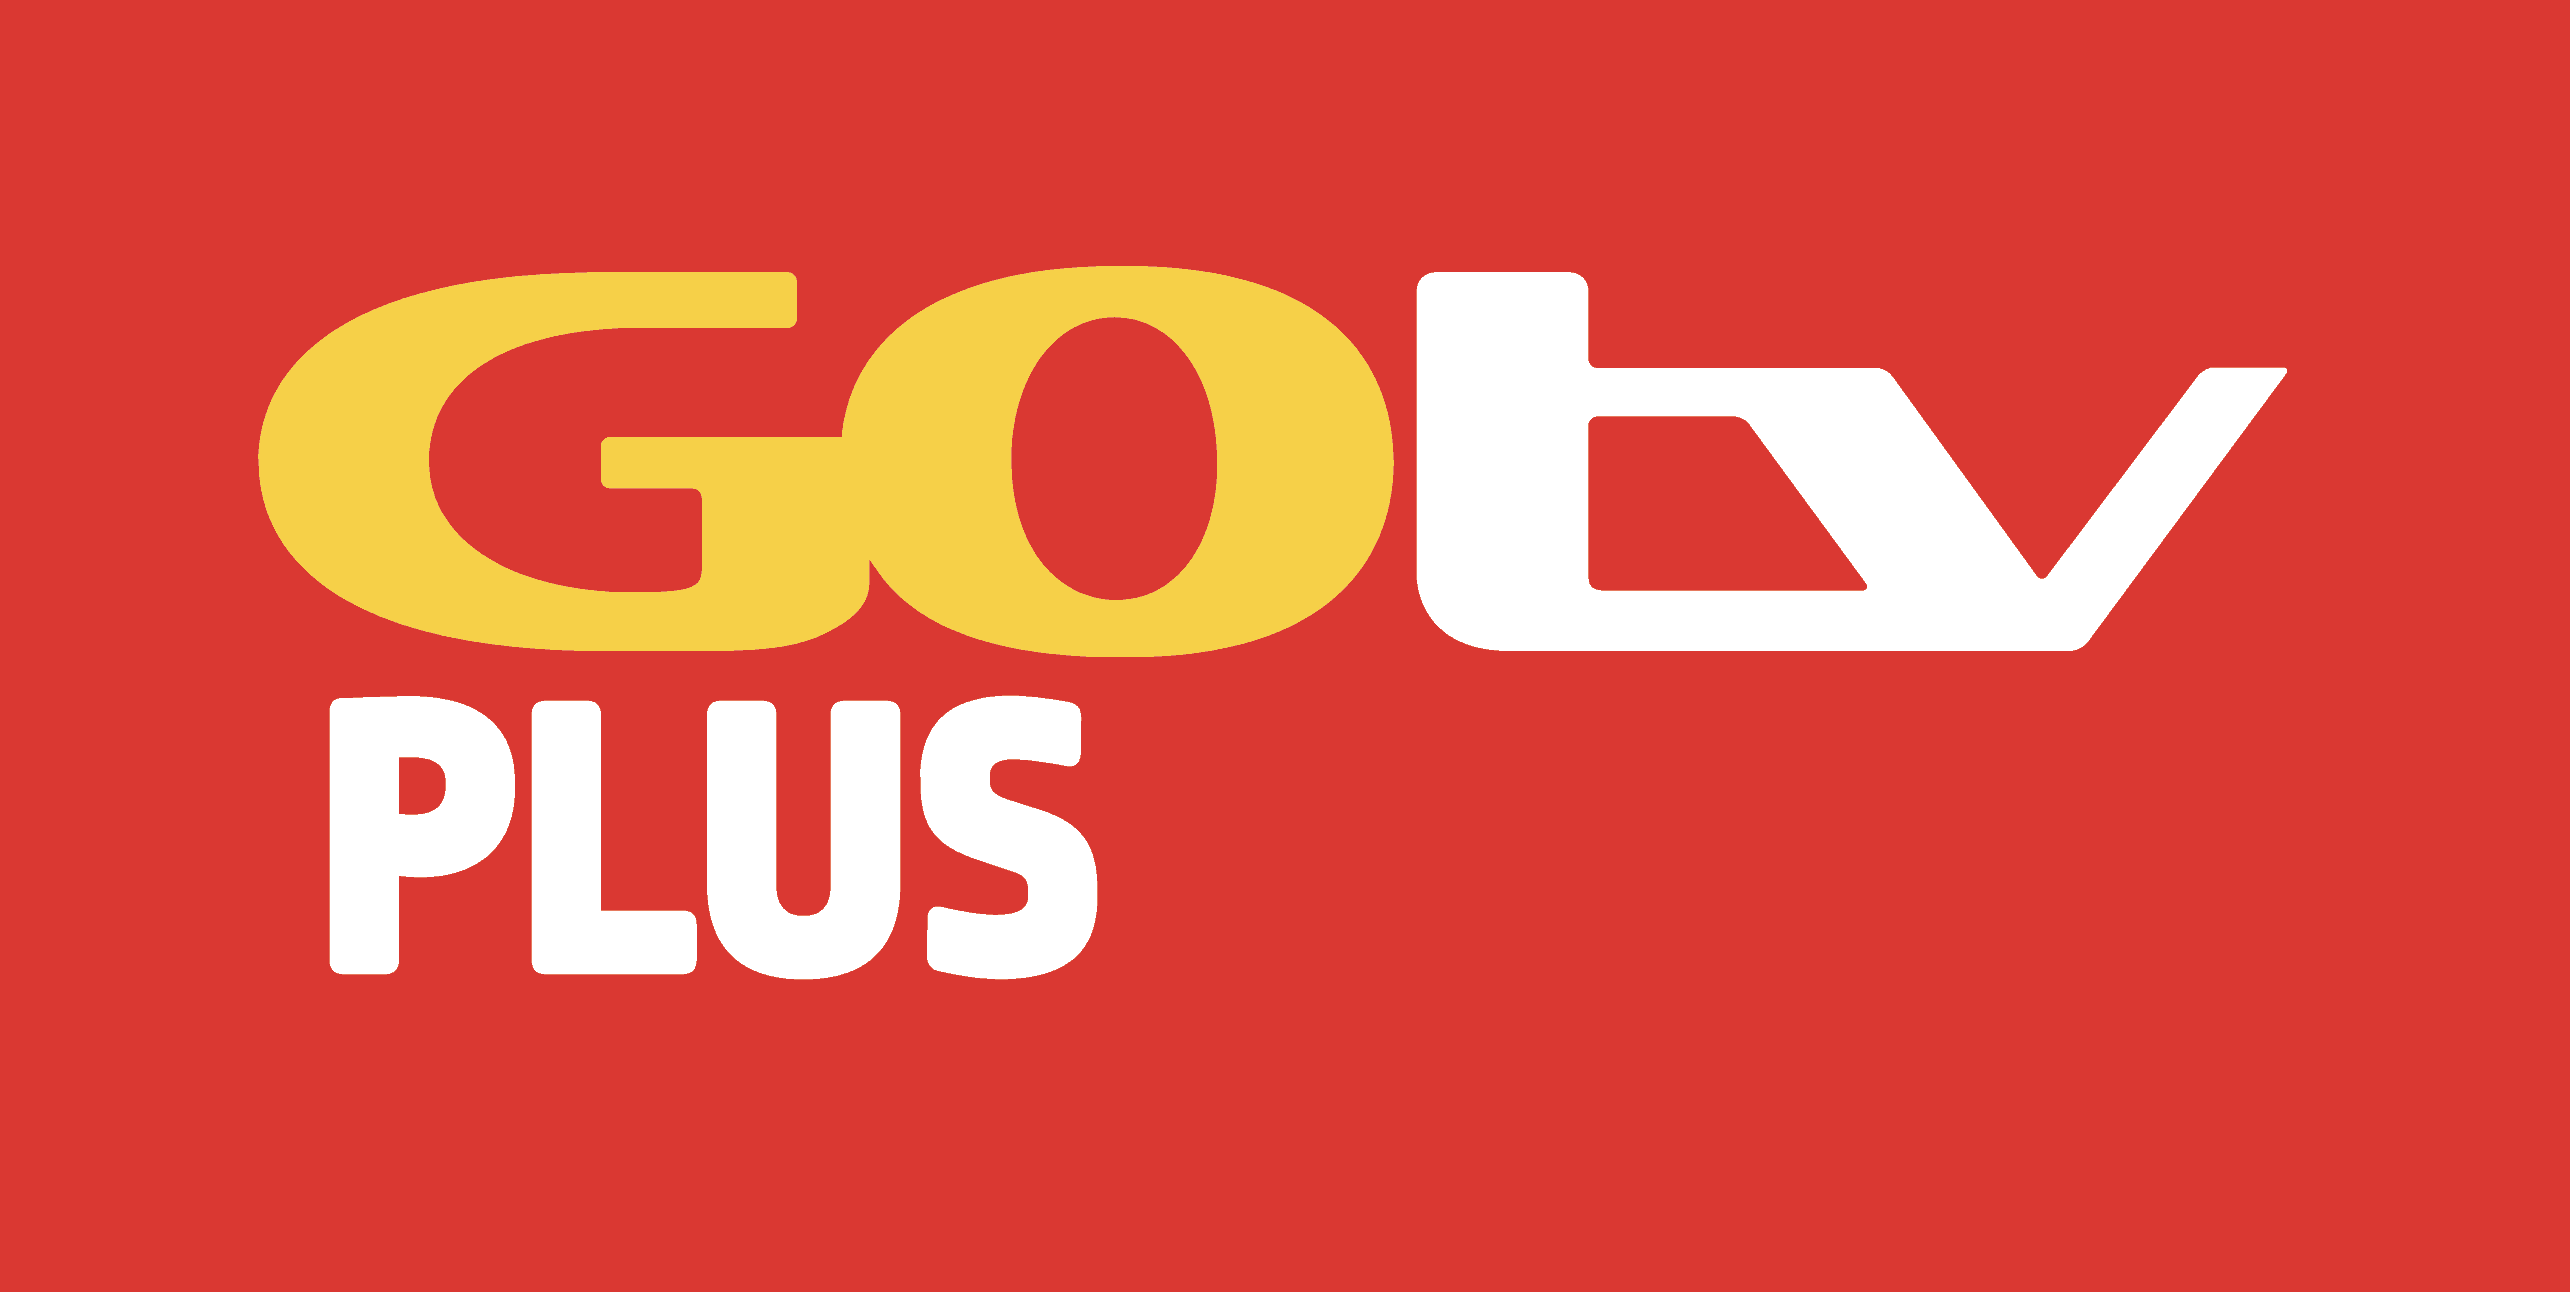 GOtv Plus channels